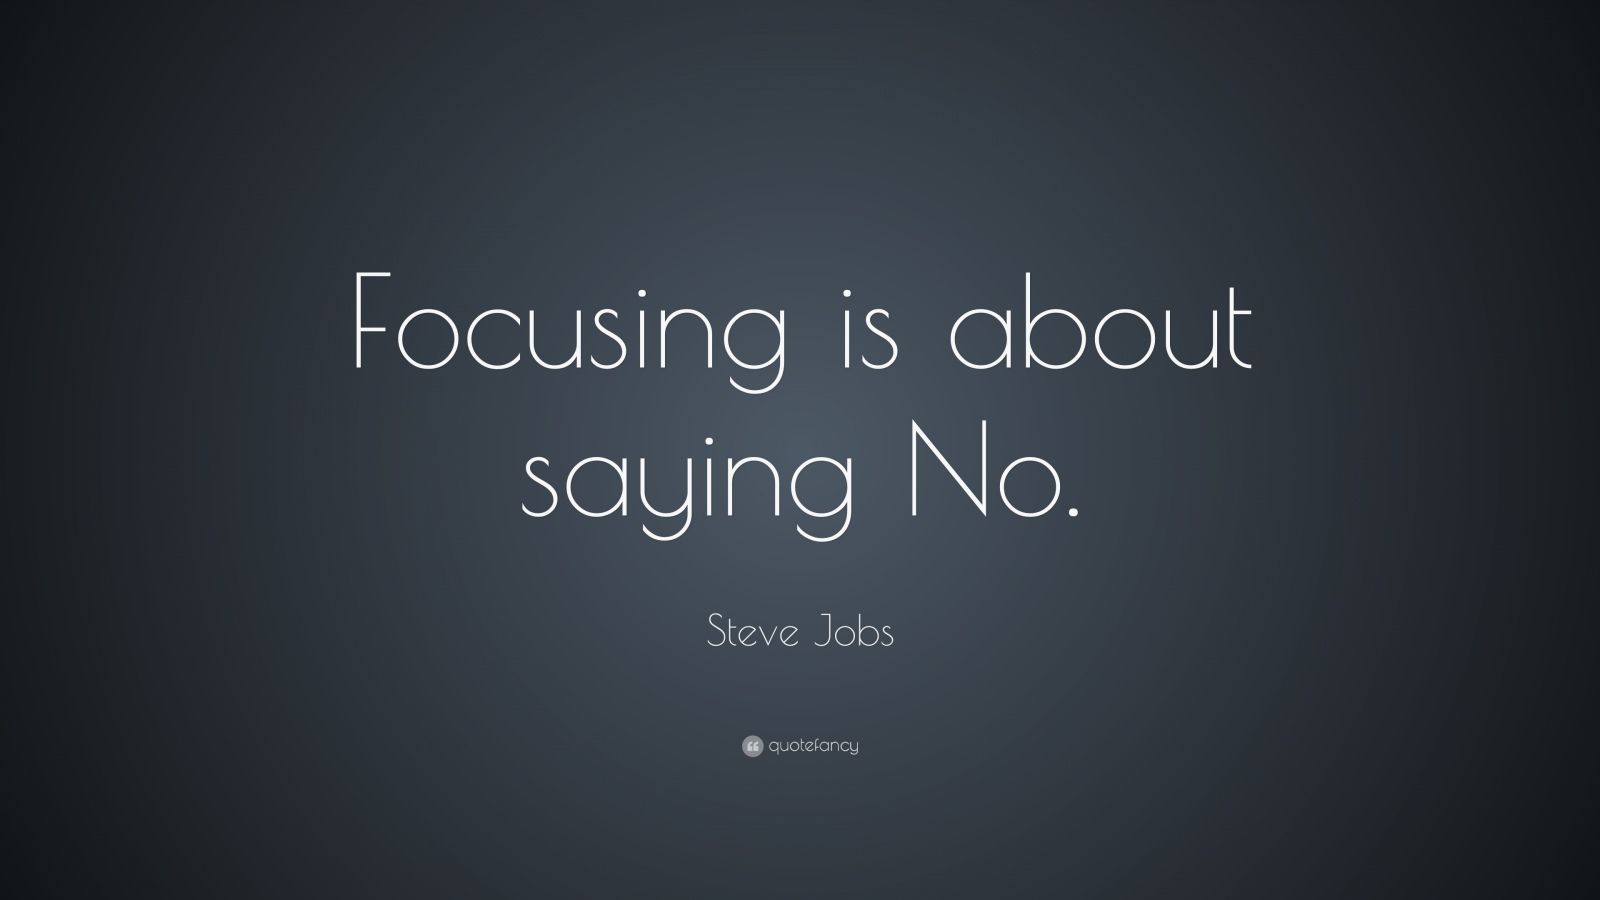 Steve Jobs Quotes (35 wallpapers) - Quotefancy